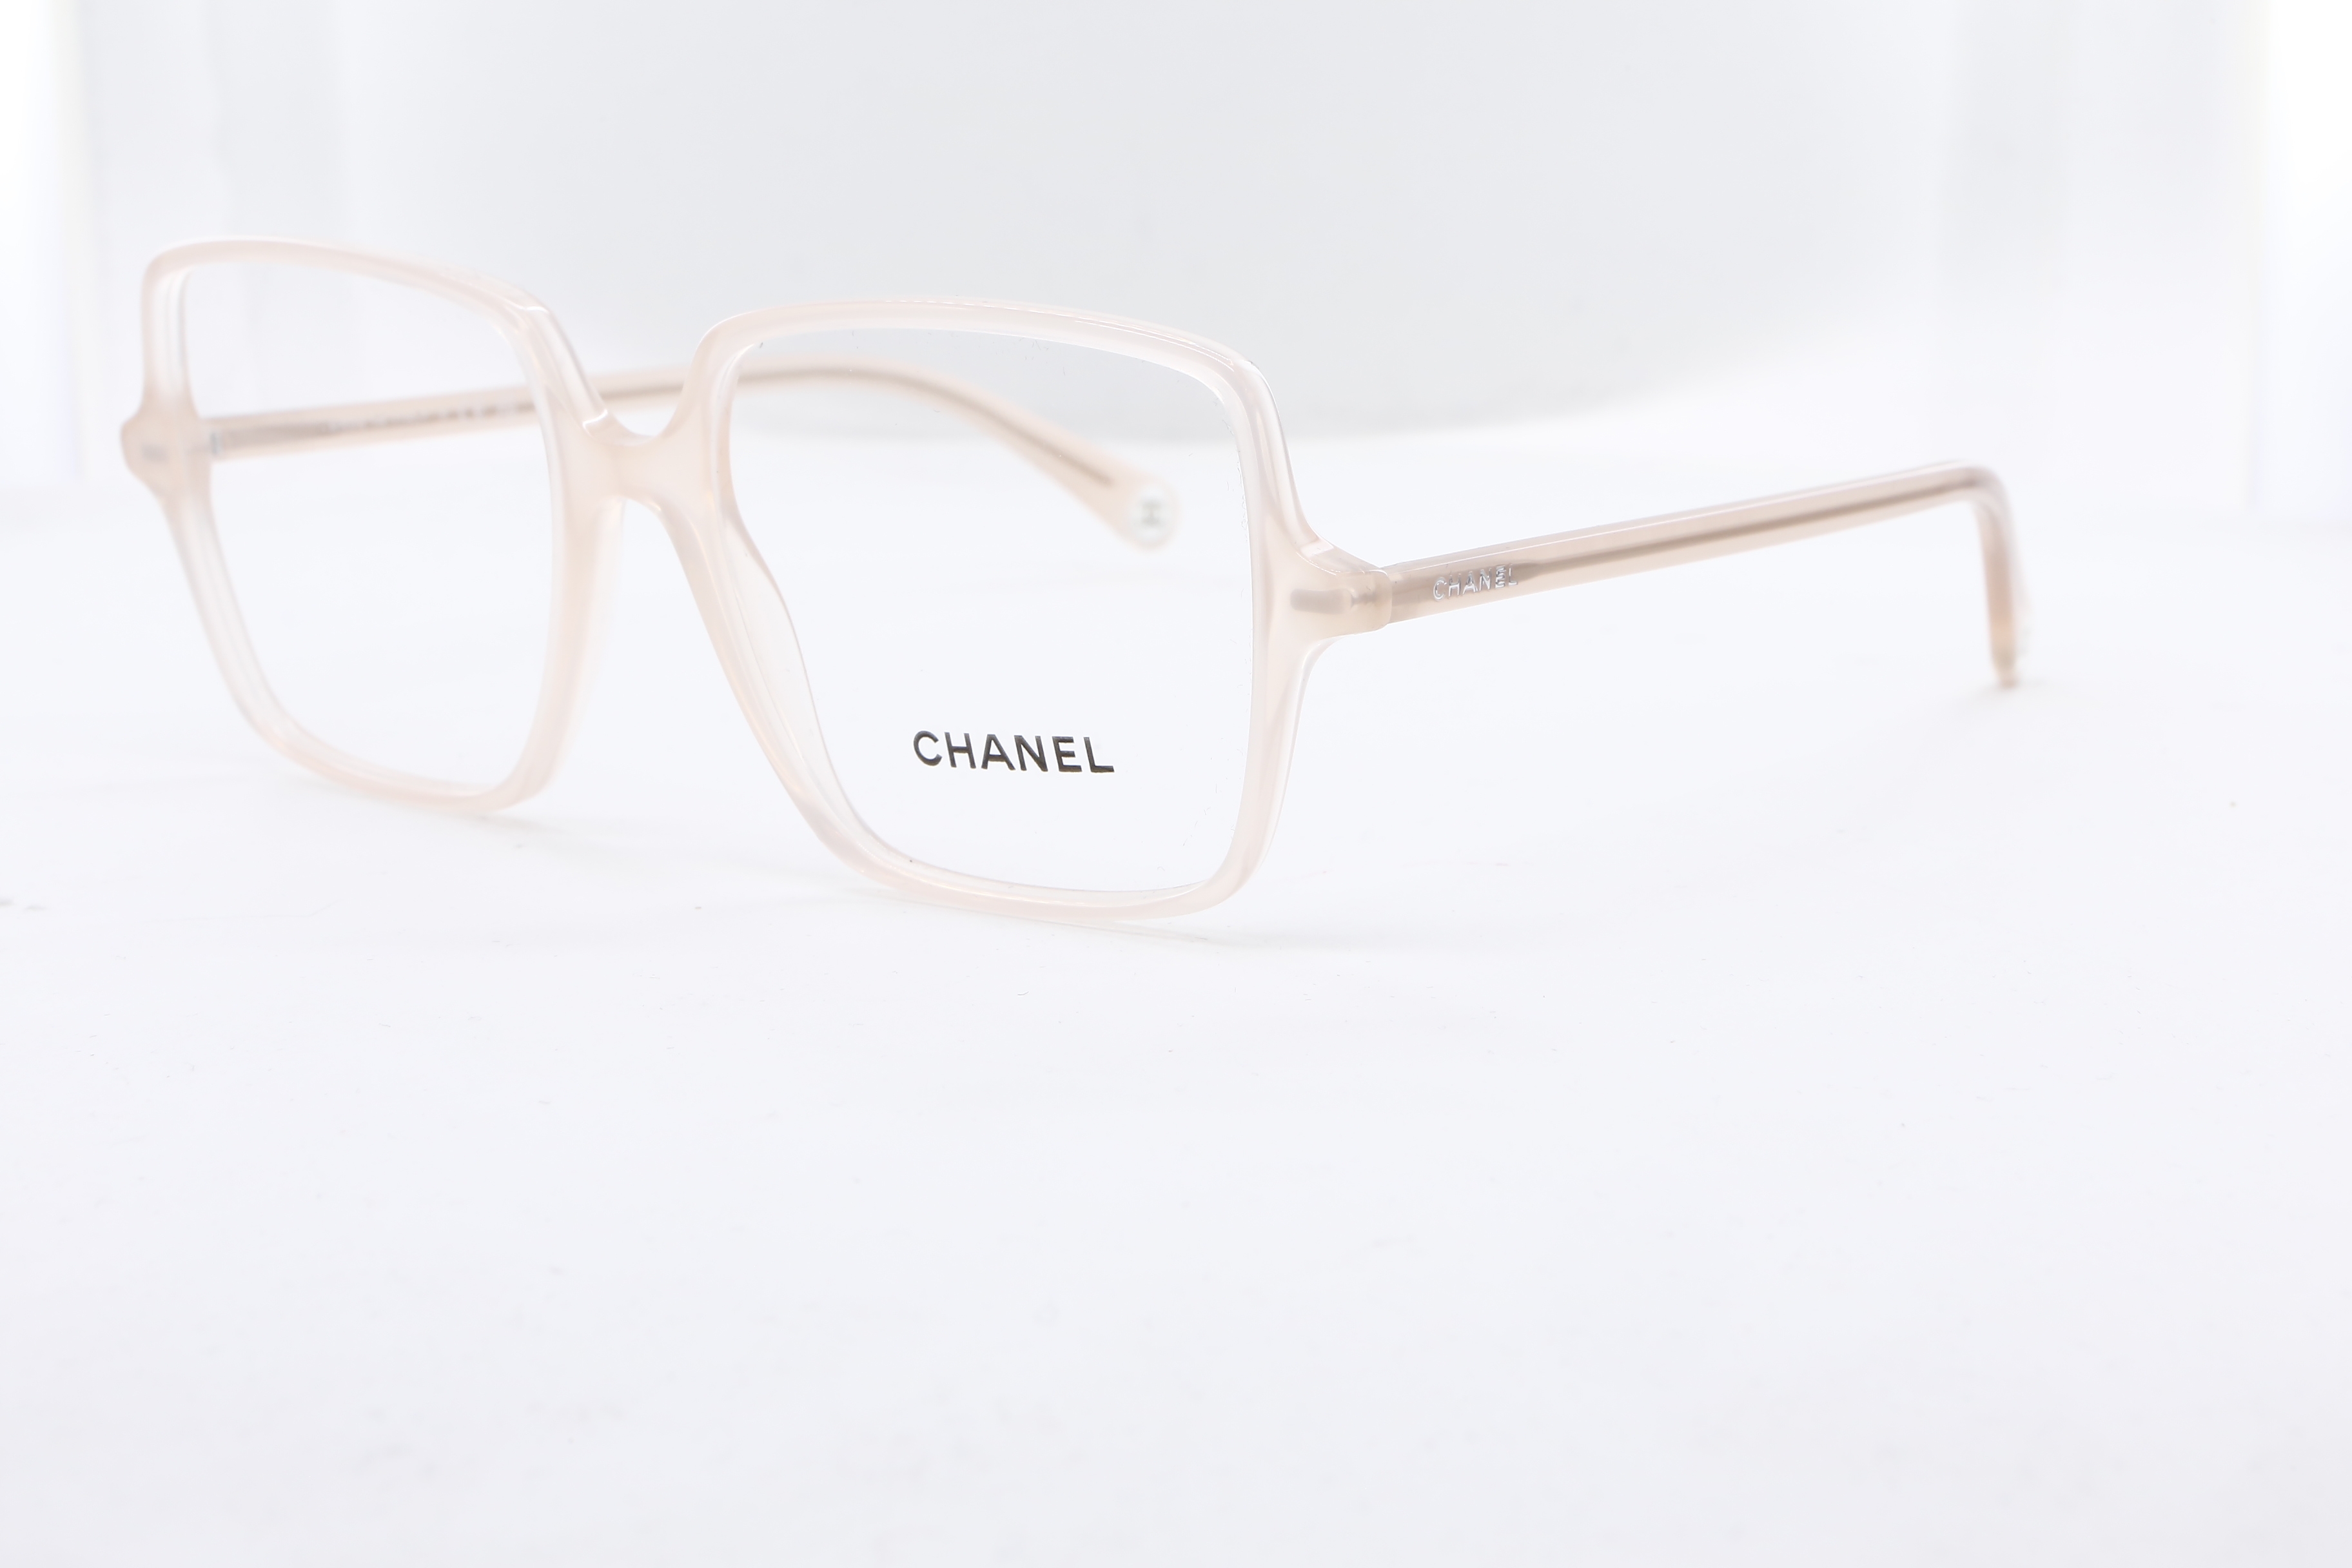 Chanel - ref: 89419